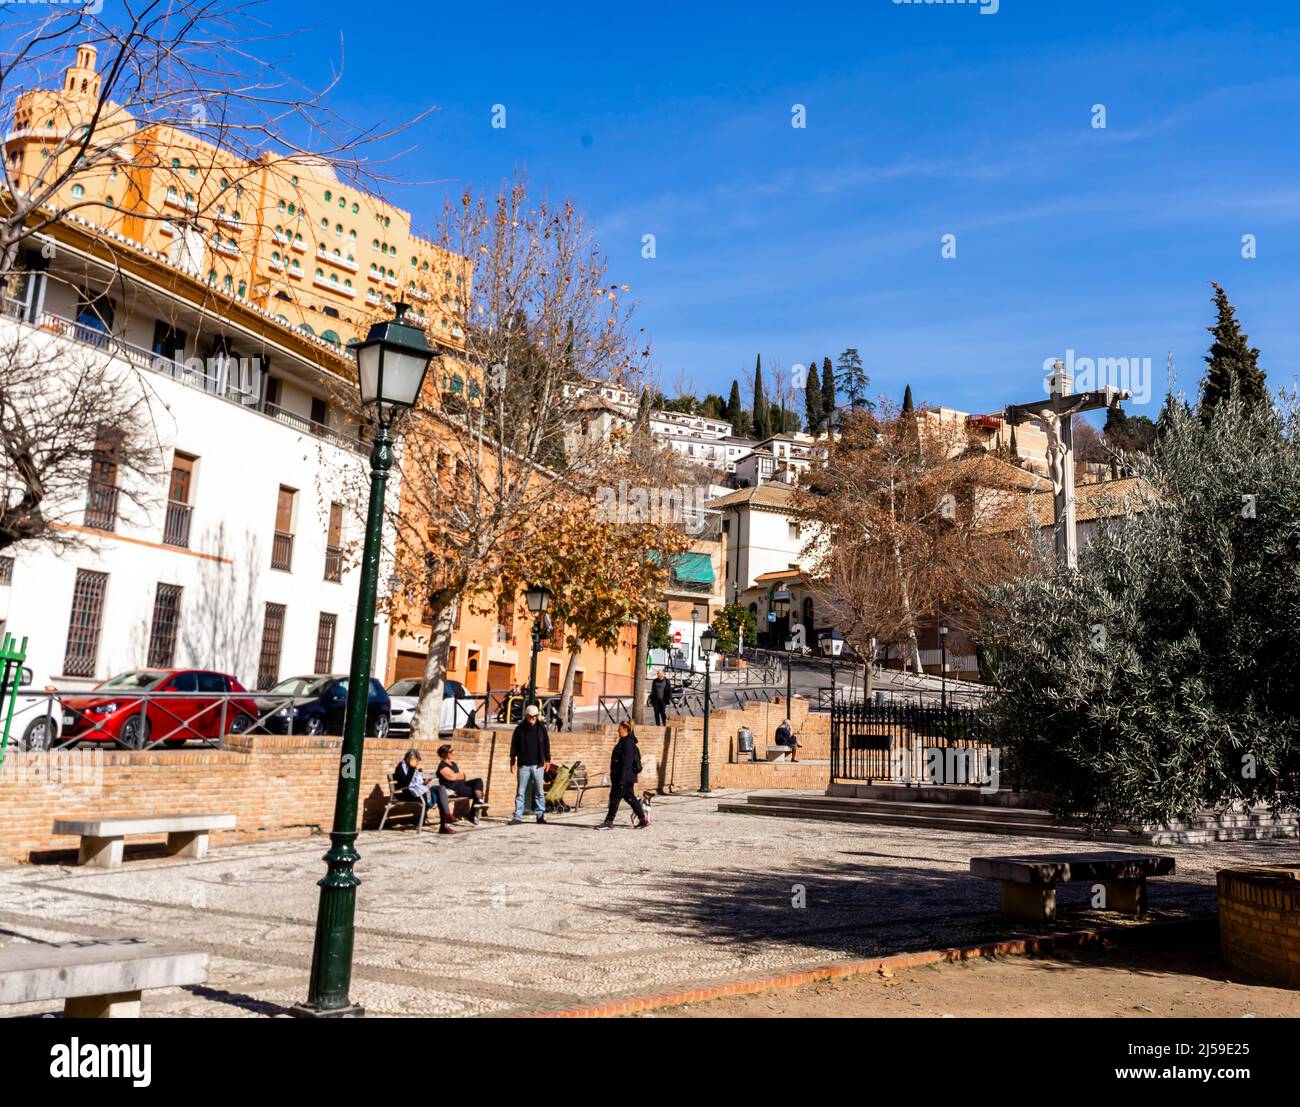 Plaza de Fortuny, Barrio realejo, Granada, España Foto de stock